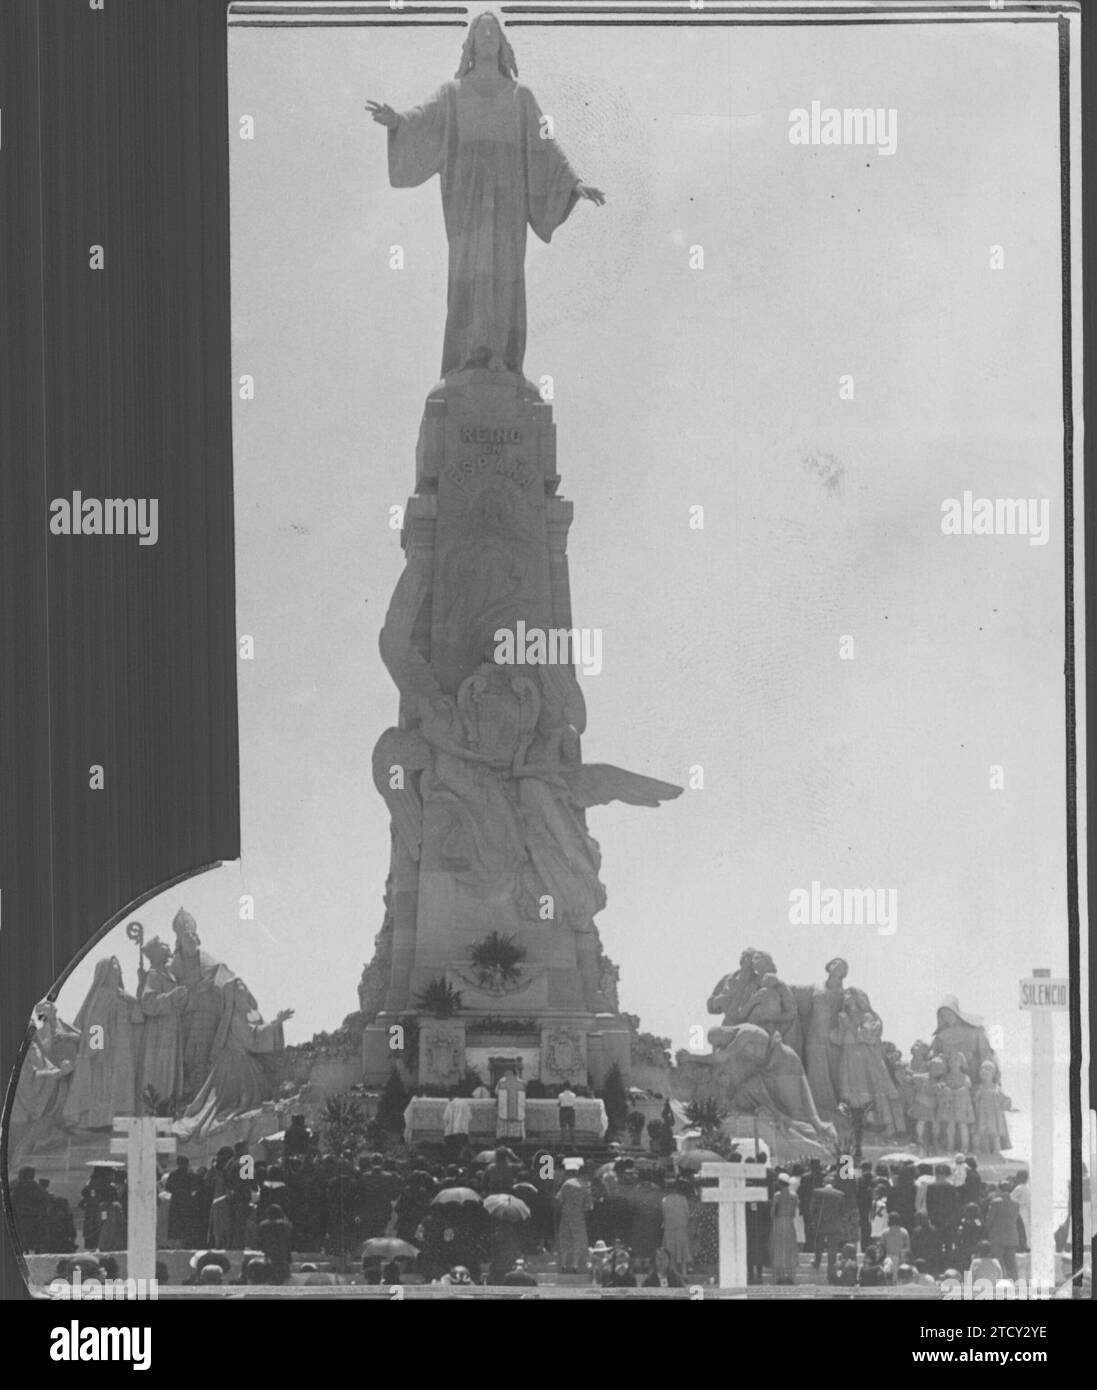 01/31/1930. Messa testimoniata da numerosi fedeli al Monumento al Sacro cuore di Gesù. Crediti: Album / Archivo ABC Foto Stock